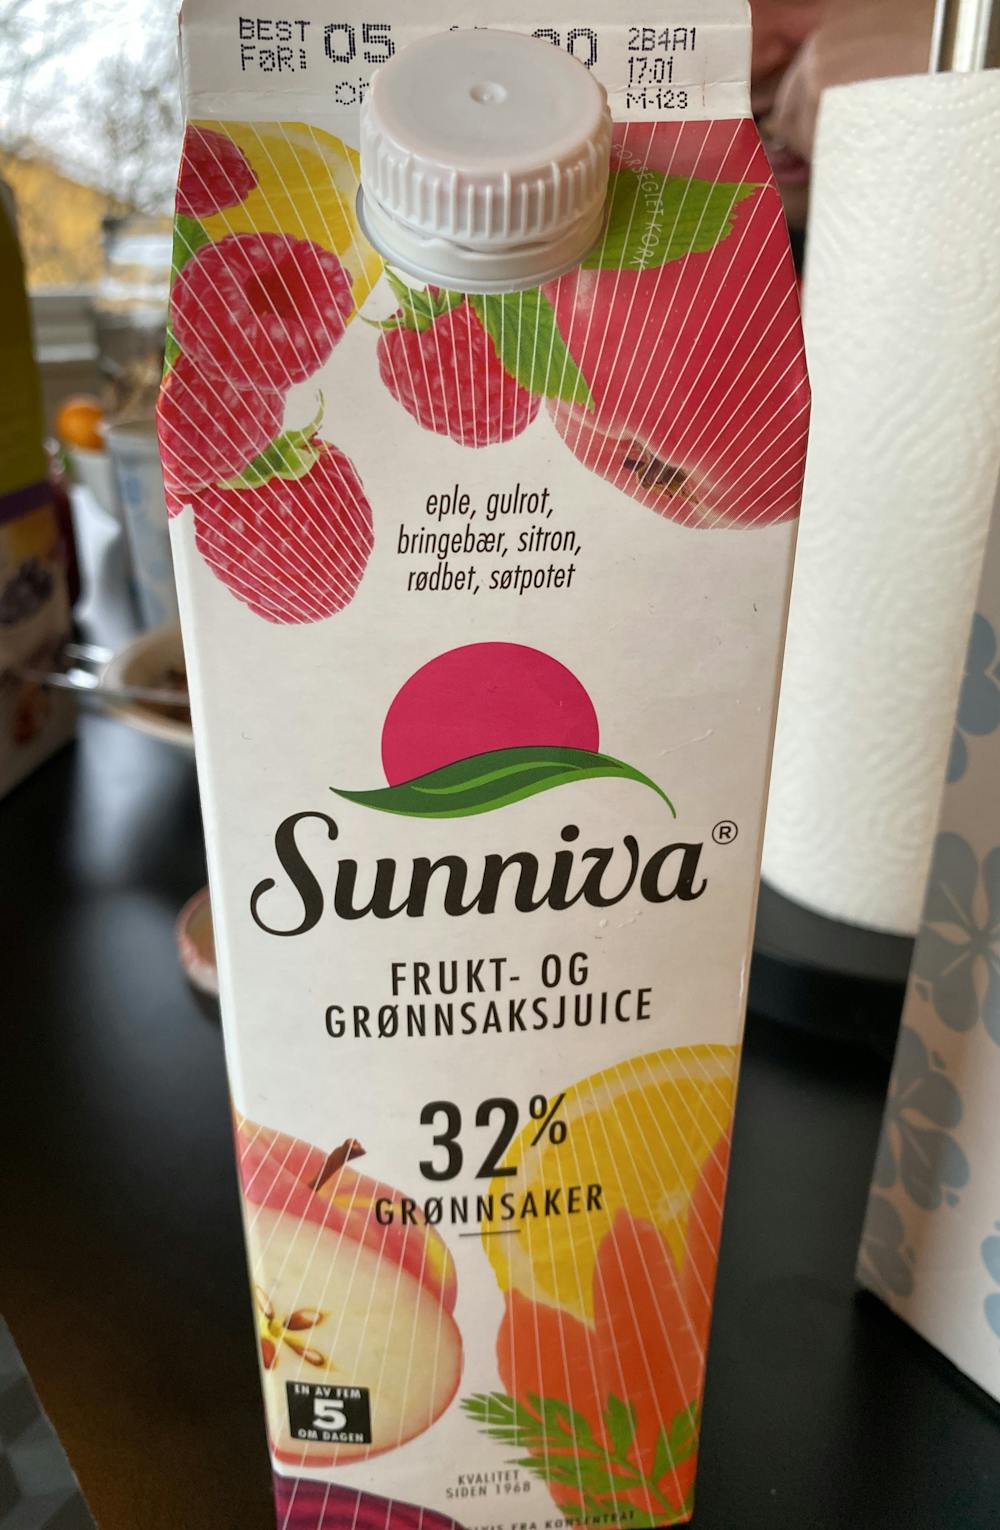 Frukt- og grønnsaksjuice, Sunniva